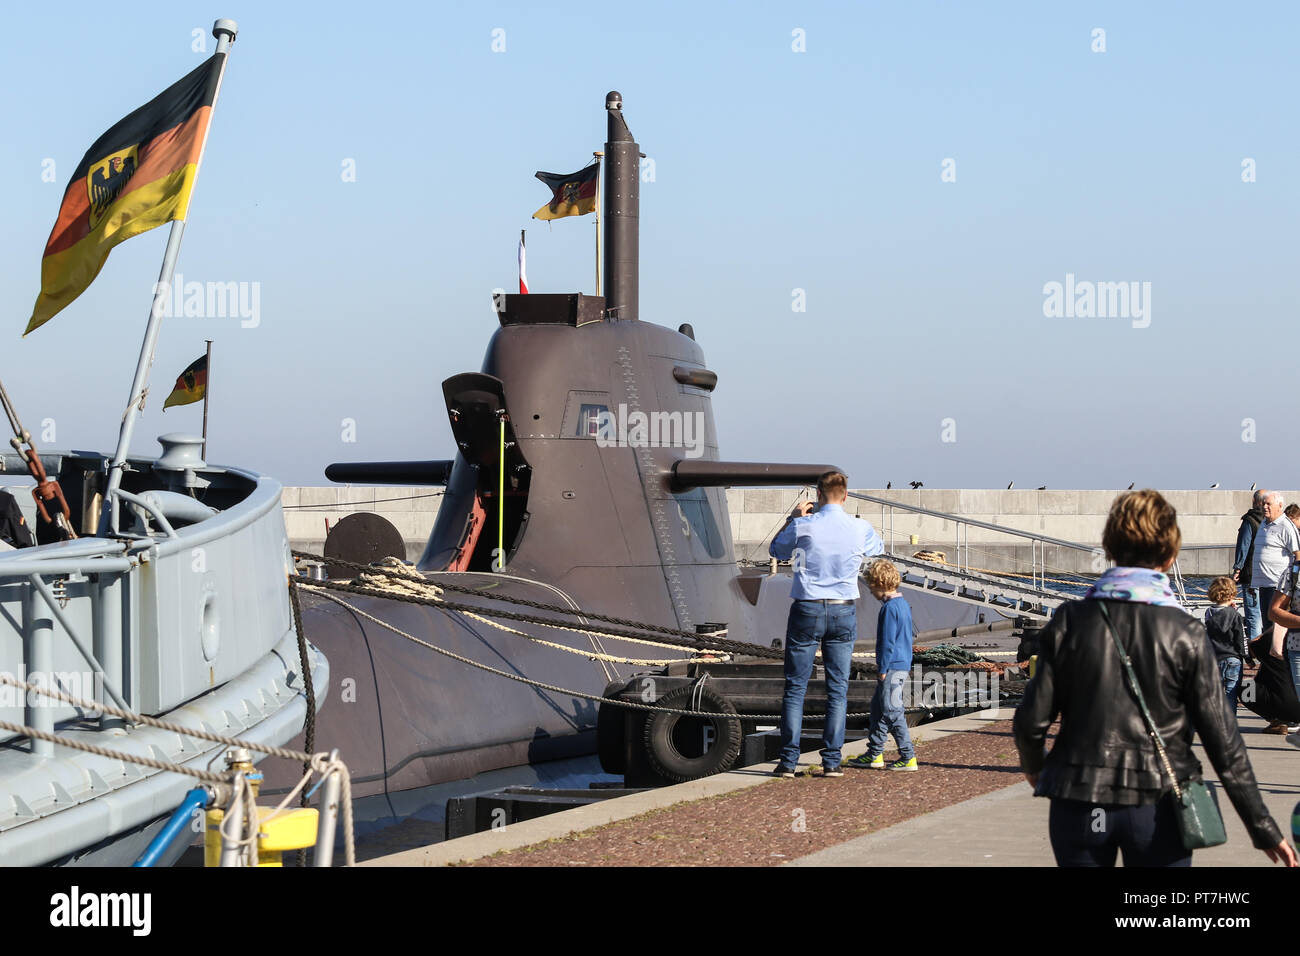 Gdynia, Polen, 6. Okt. 2018 U-31 (S181) die 212 eine Art U-Boot der deutschen Marine zu sehen ist. Deutsche Marine Schiffe incl. 212 eine Klasse U 31 u-Boot entwickelt von der Howaldtswerke-Deutsche Werft AG (HDW). Die 212 A und 212 CD submarins sind für Polnische Marine als Teil der Orka Programm vorgeschlagen. © vadim Pacajev/Alamy leben Nachrichten Stockfoto